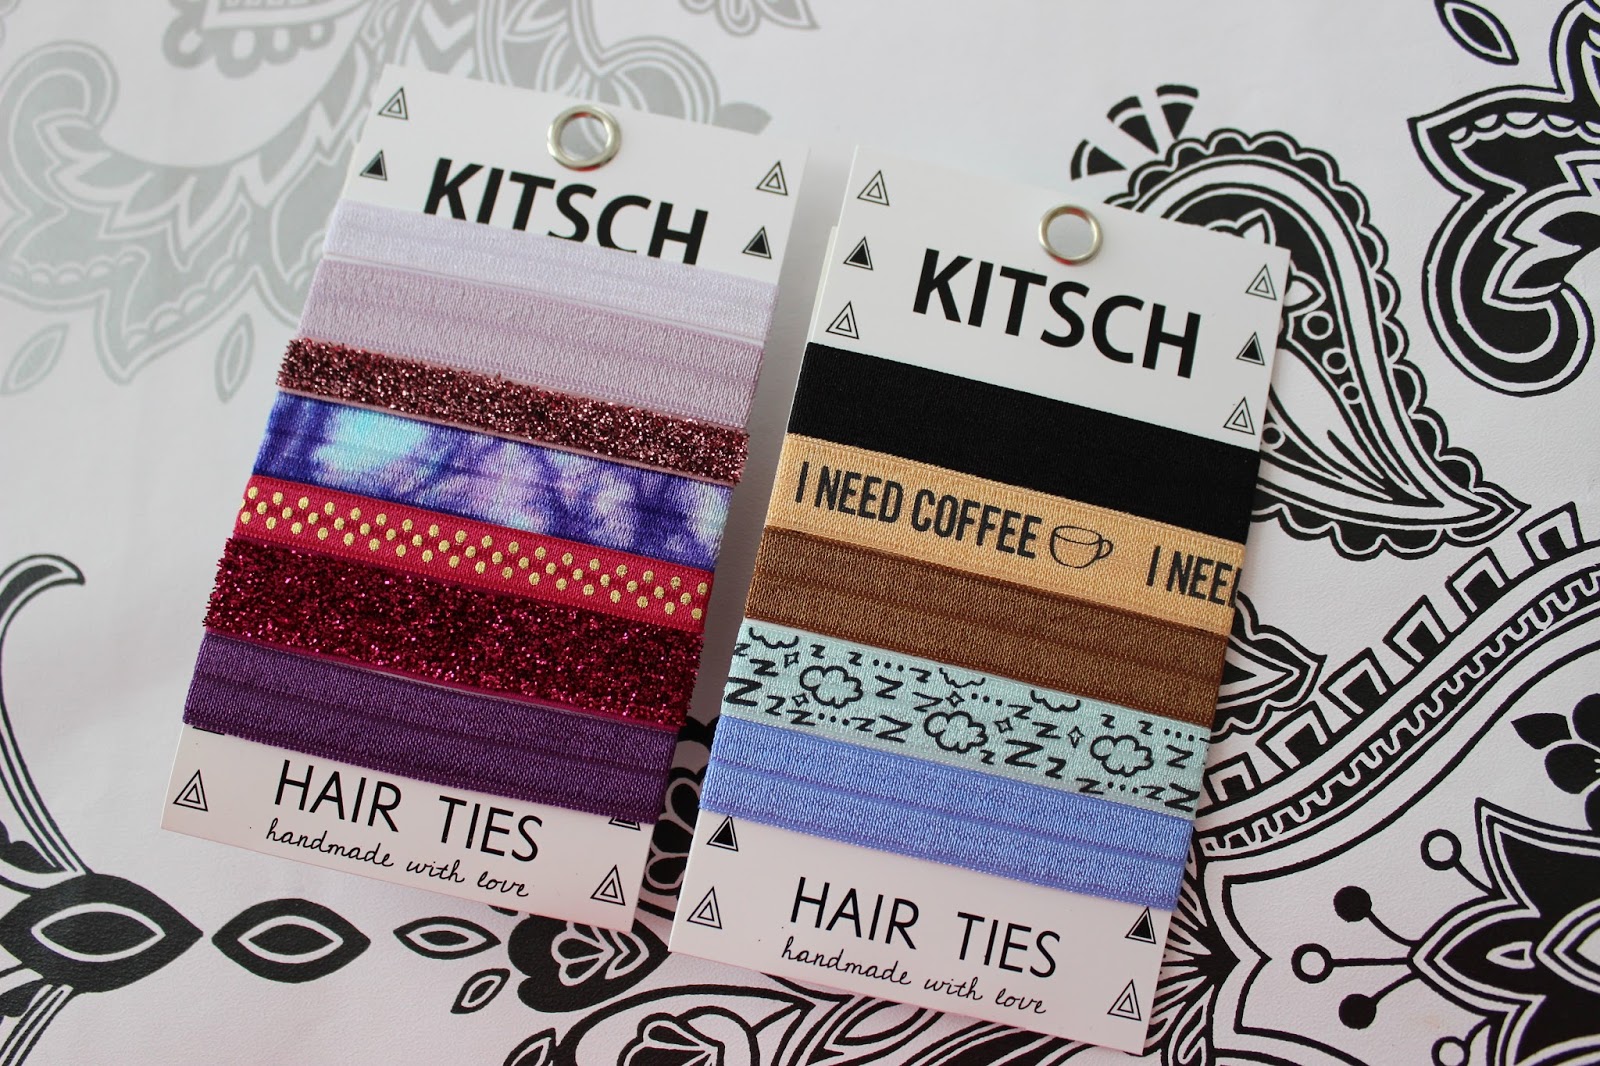 Kitsch hair ties